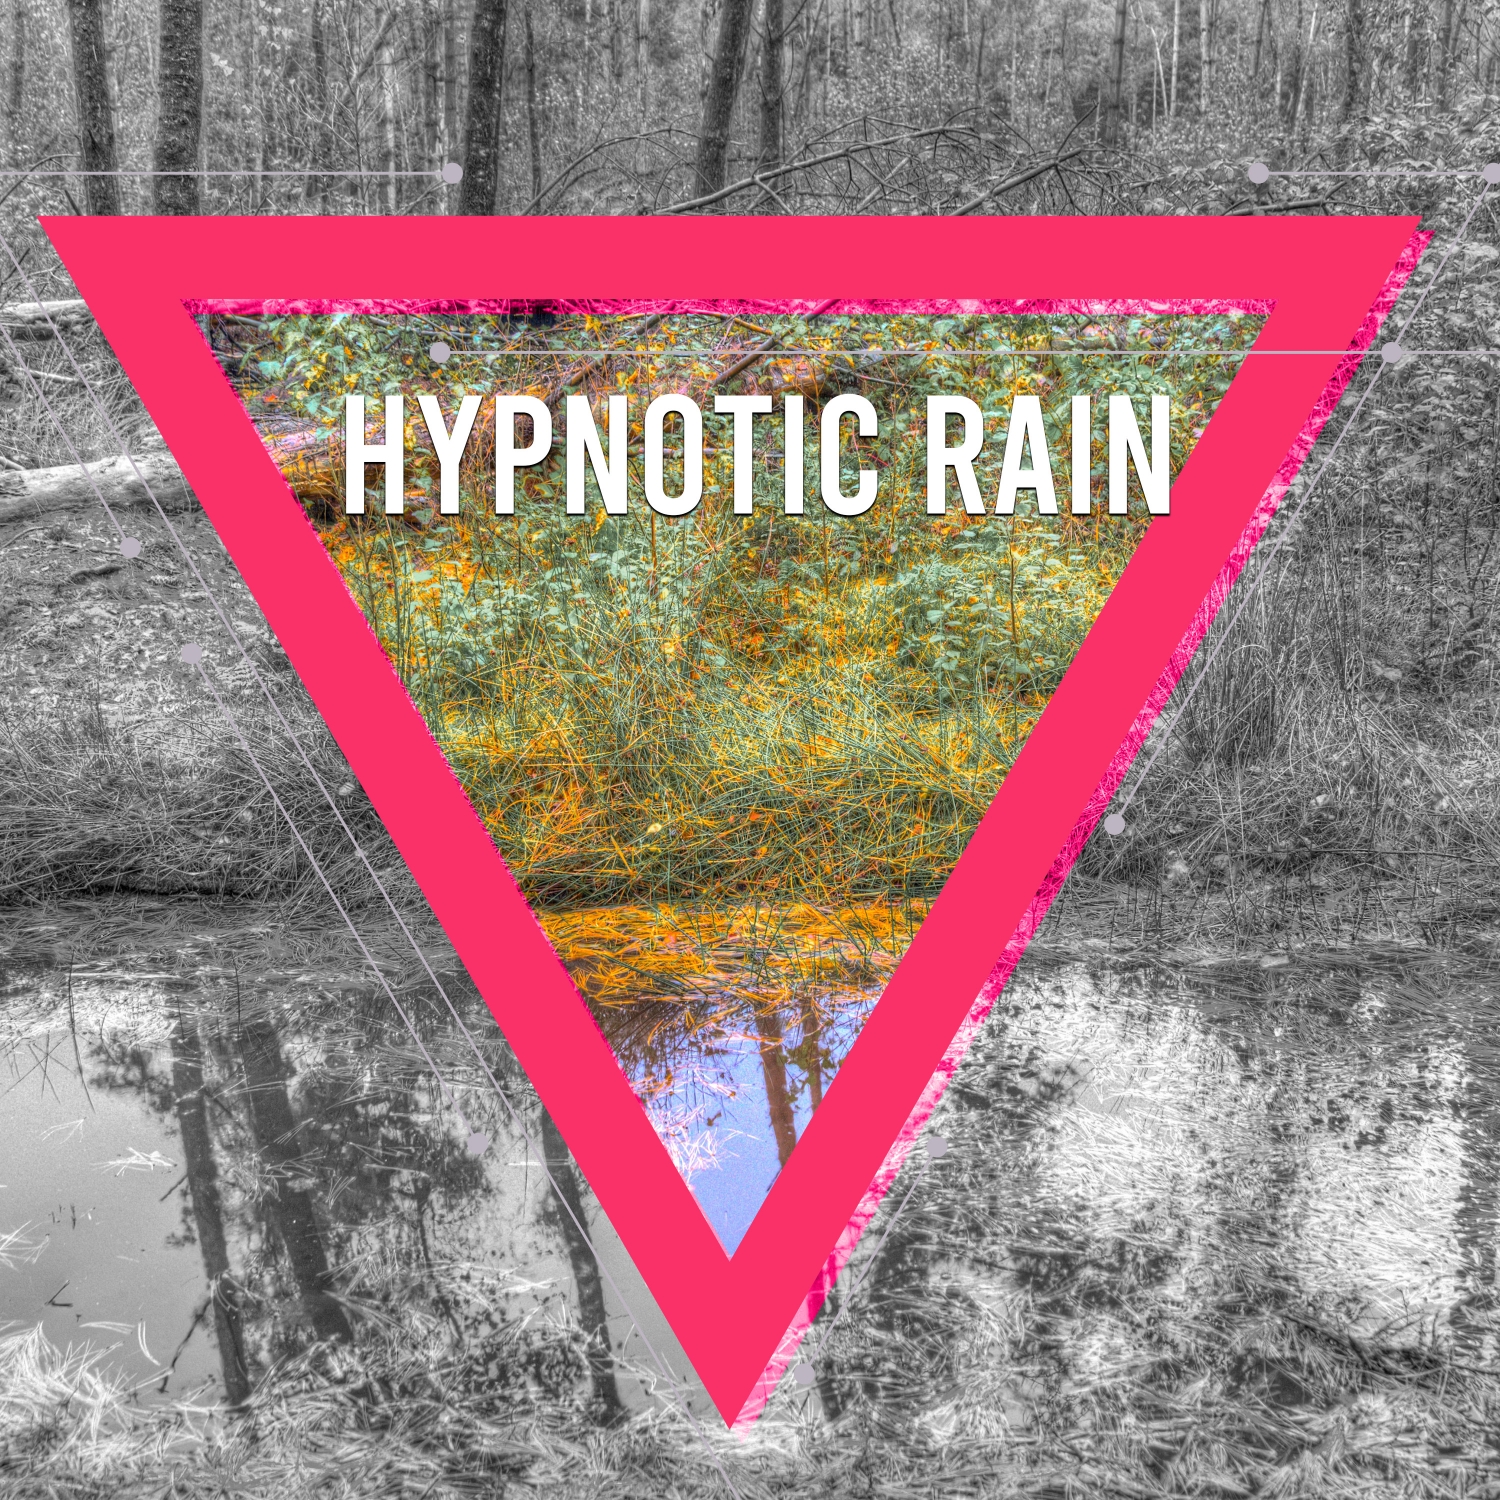 10 Hypnotic Rain Sounds